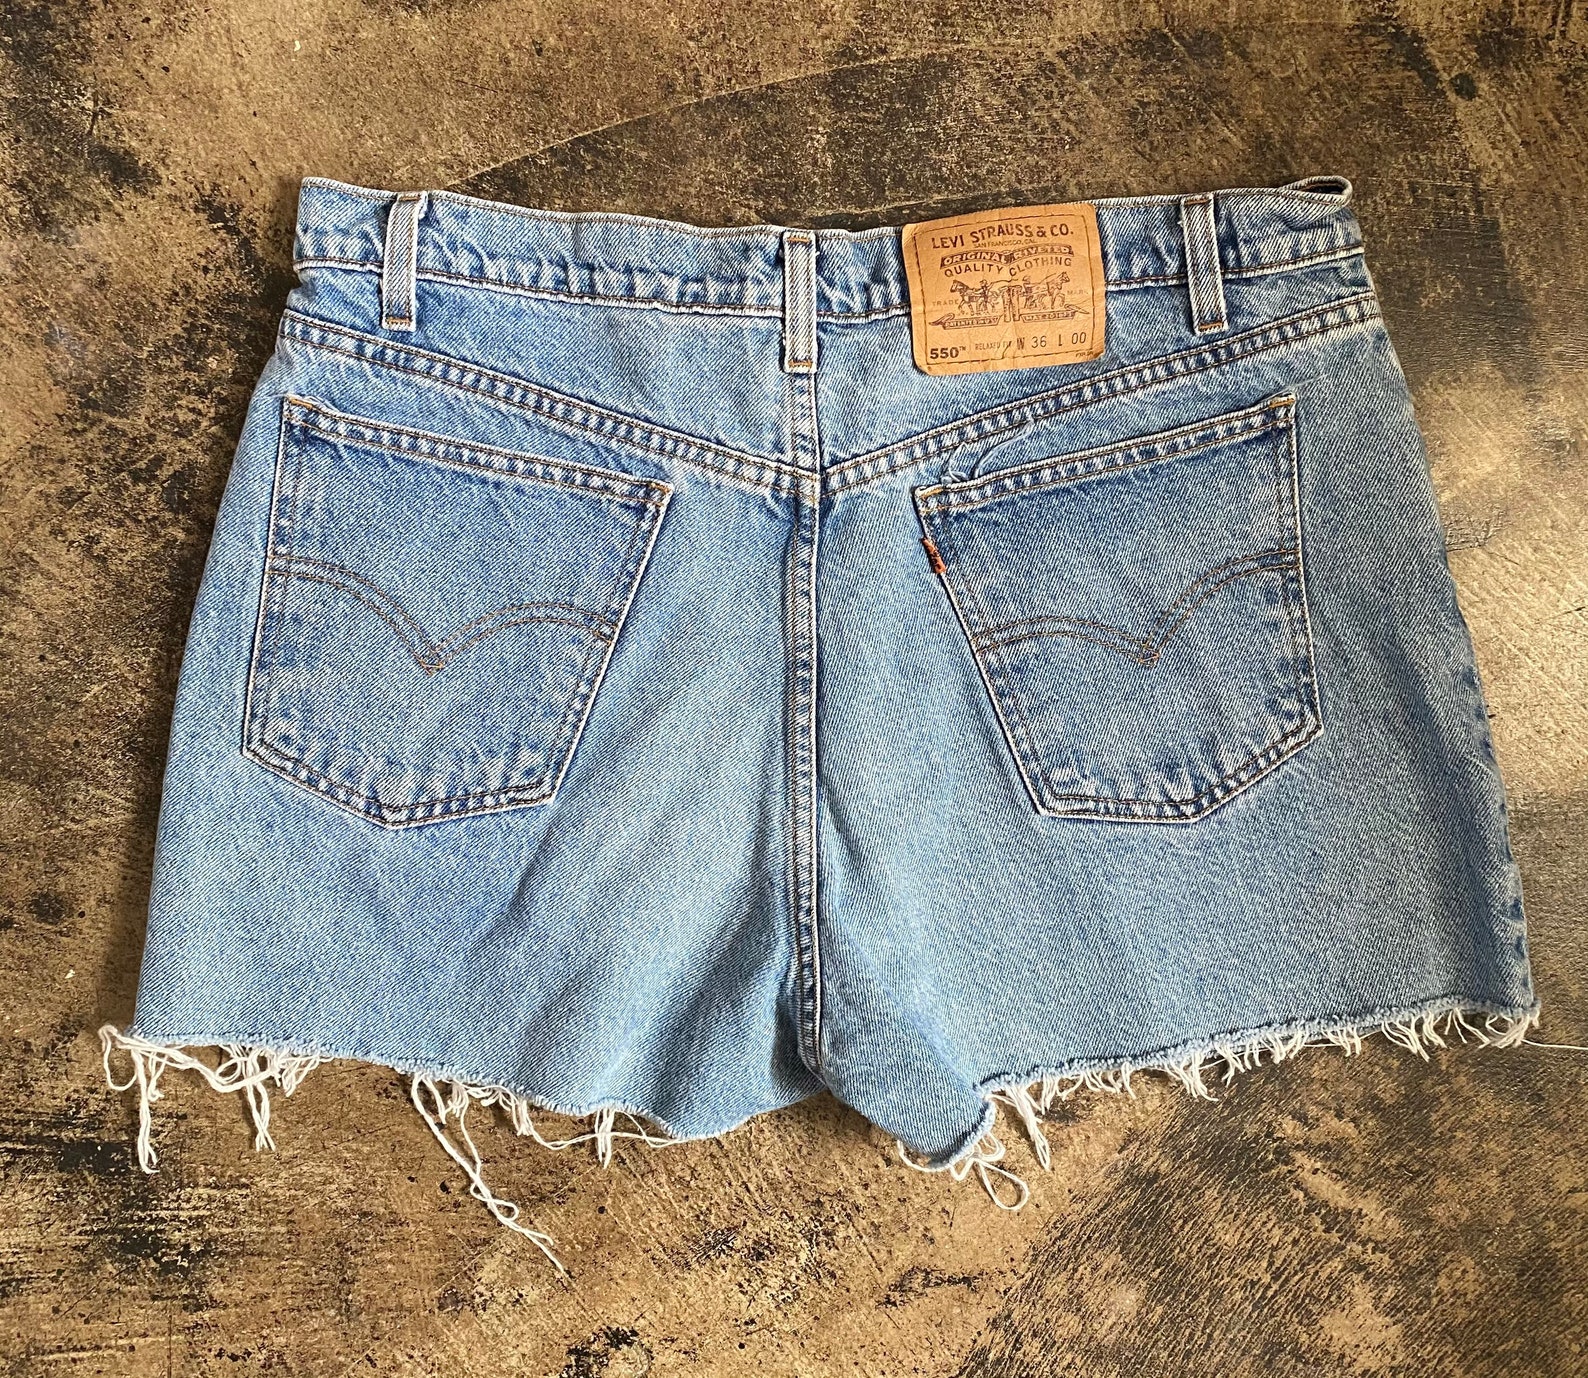 Vintage Levi shorts 550 orange tab cutoffs 37 inch waist high | Etsy